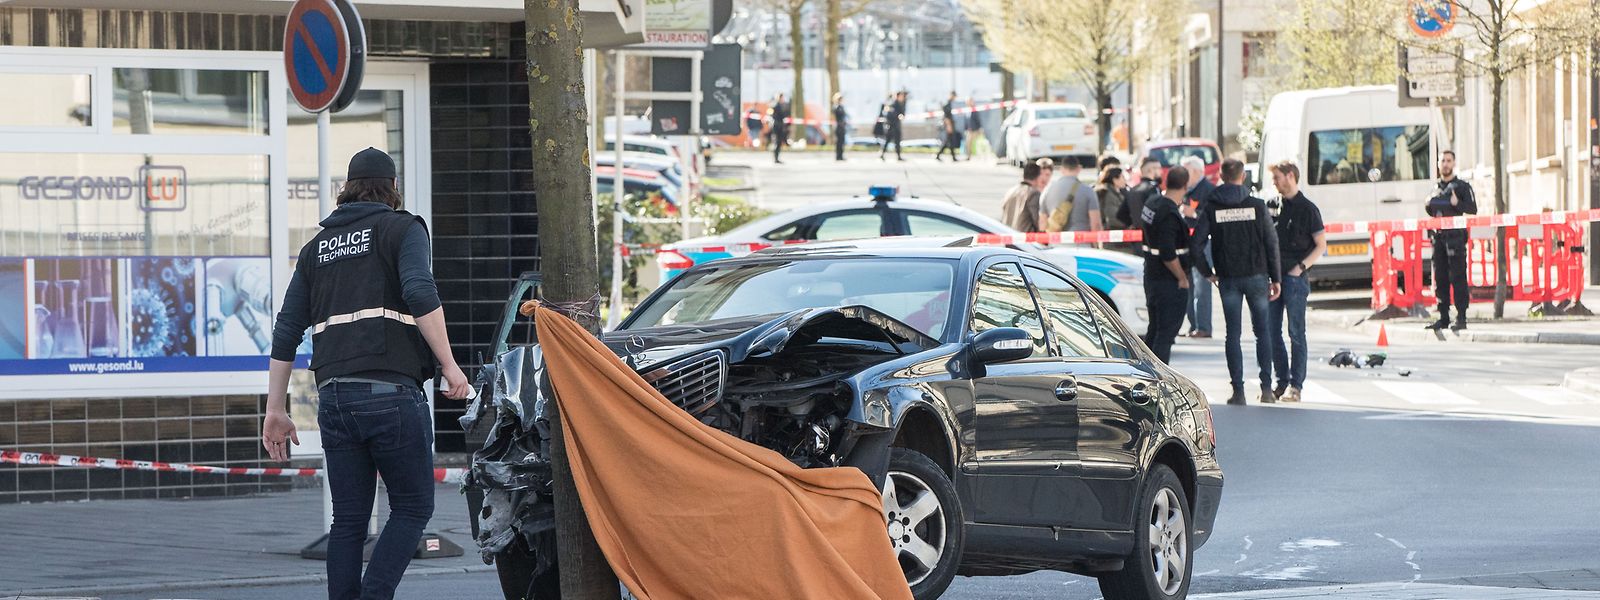 11. April 2018, Bonneweg: Nachdem ein Polizist mehrere Schüsse auf den Fluchtfahrer abgegeben hatte, war der Wagen an einem Baum zum Stehen  gekommen. Der 51-jährige Fahrer erliegt kurze Zeit später seinen Verletzungen.